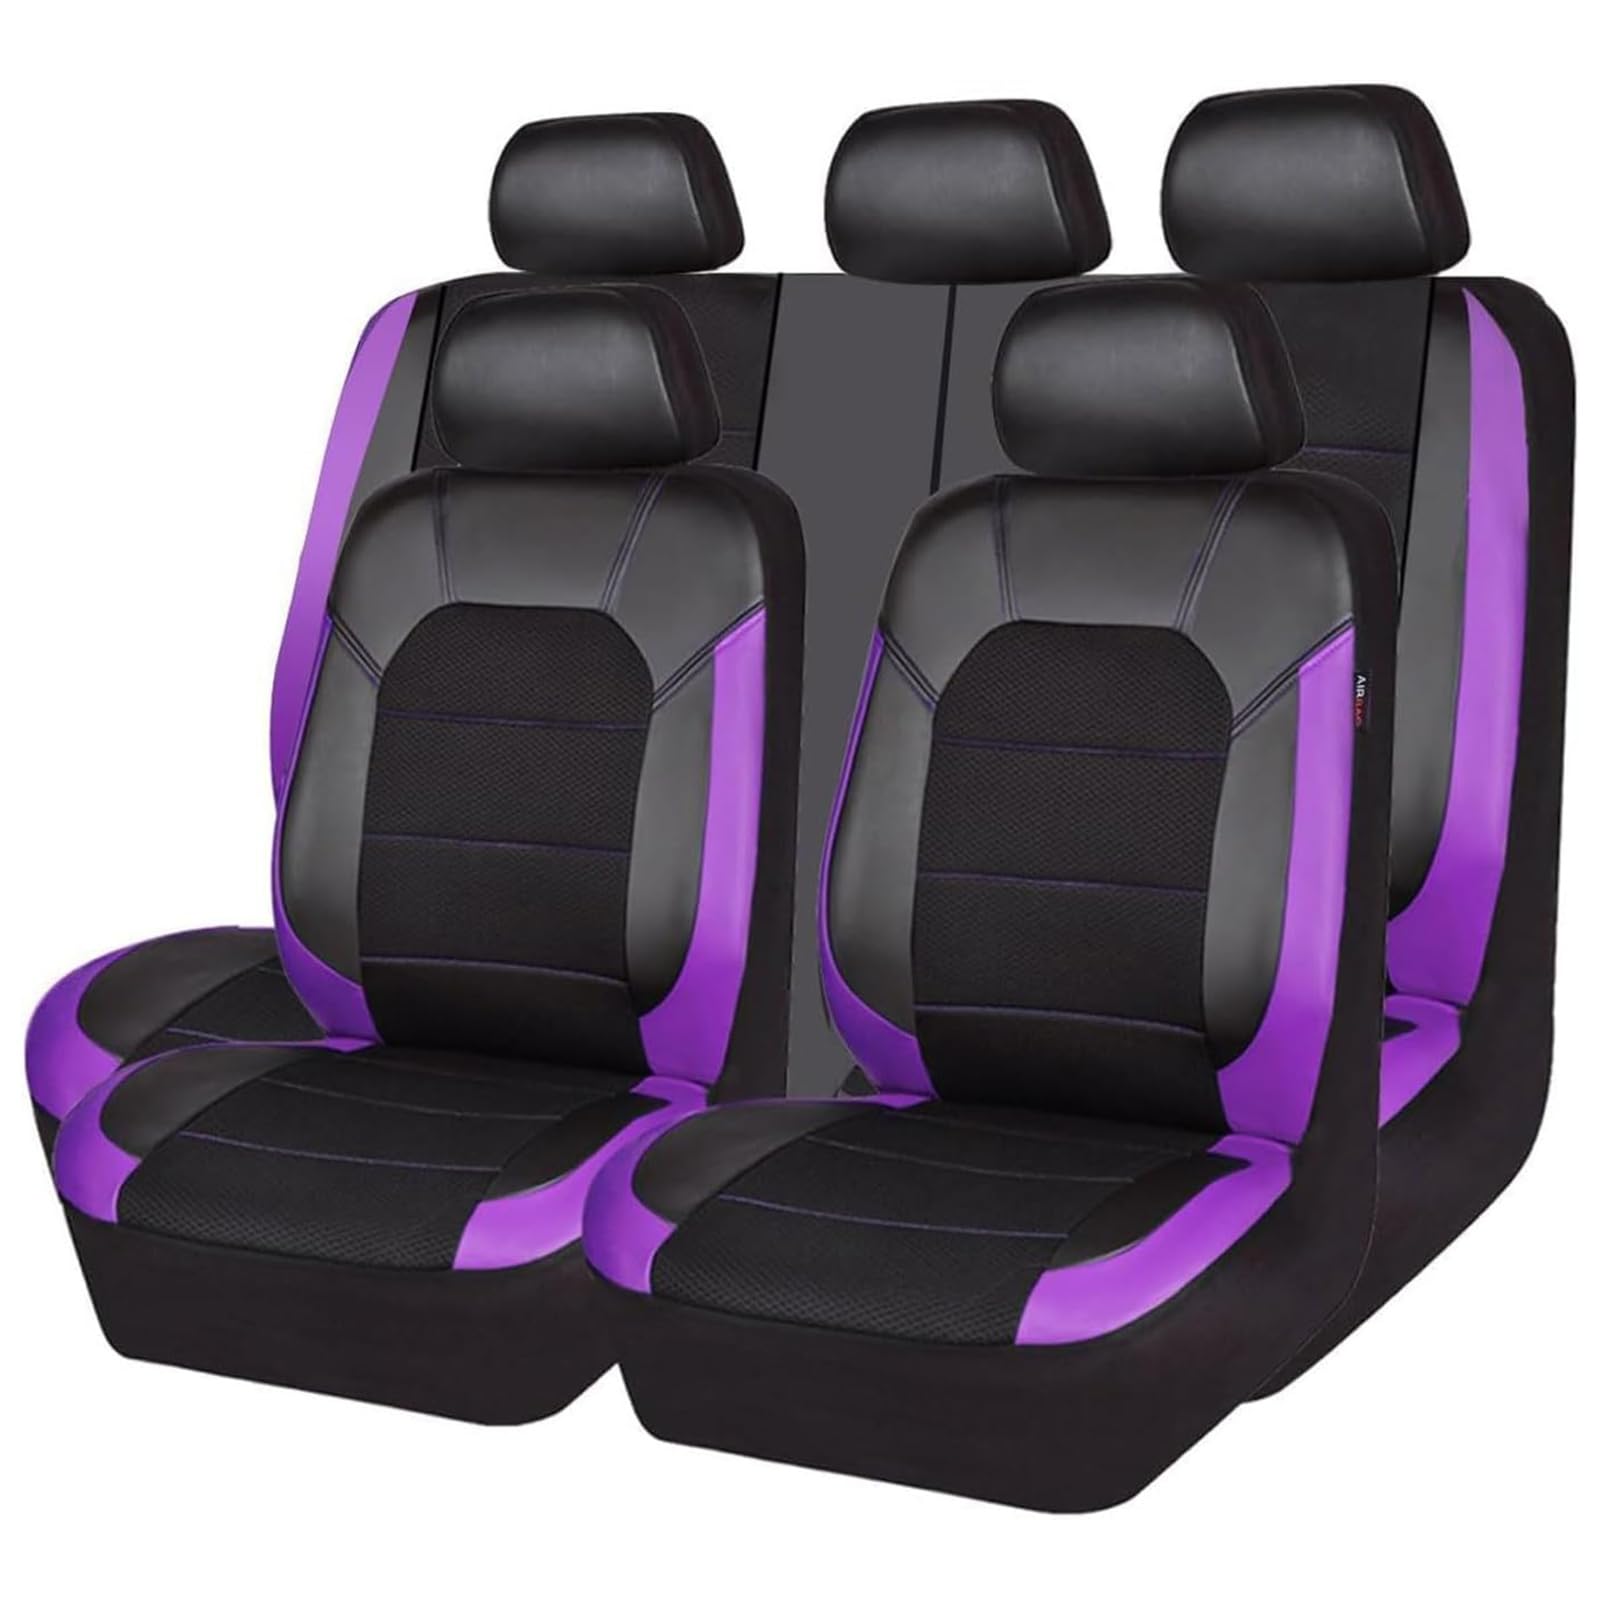 ZXAJDWNU Auto Leder Sitzbezüge Sets Für Seat Ibiza 2009-2017, 5 Sitze Allwetter Vorne Und Hinten Komfortabler Atmungsaktiv Sitzbezüge Sitzschoner Innenraum Zubehör,E/Purple von ZXAJDWNU